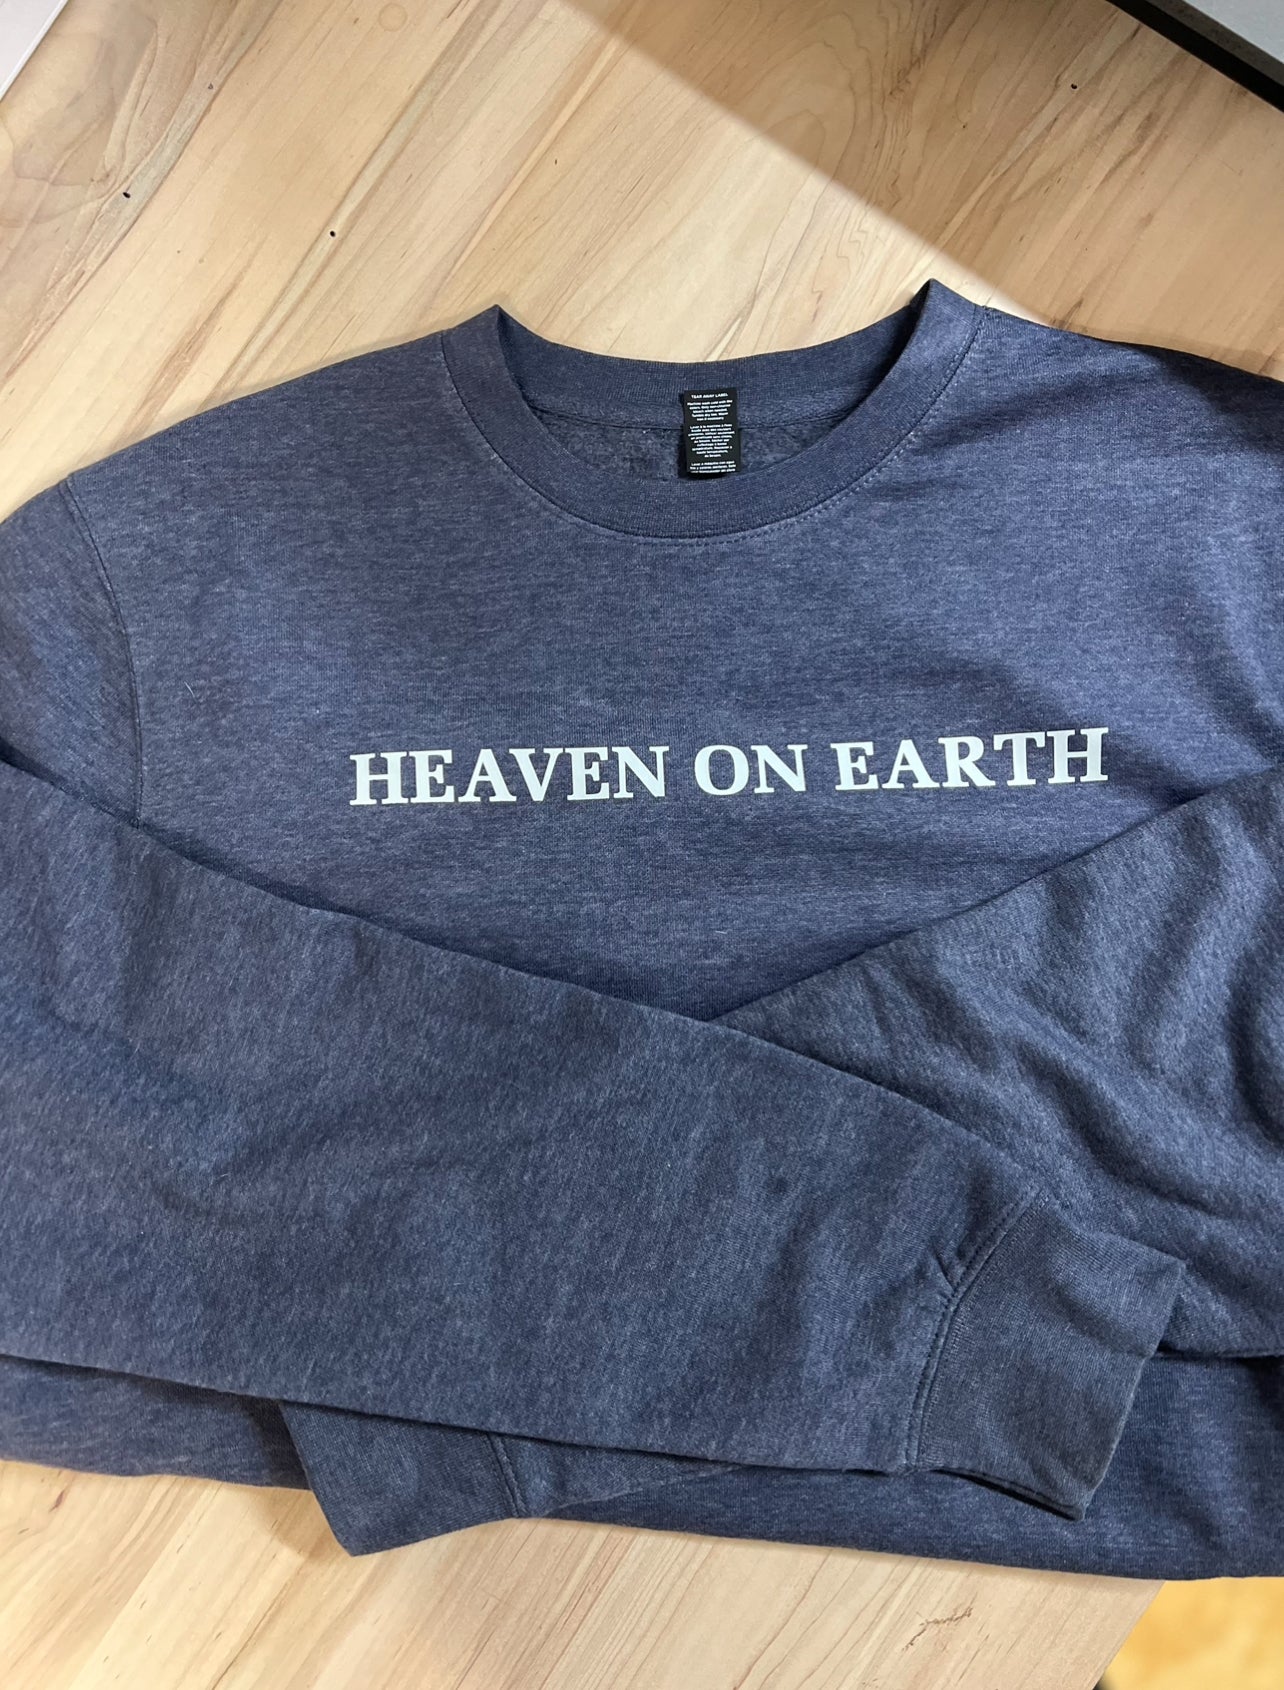 Heaven on earth Navy Blue Fleece Crewneck Sweatshirt